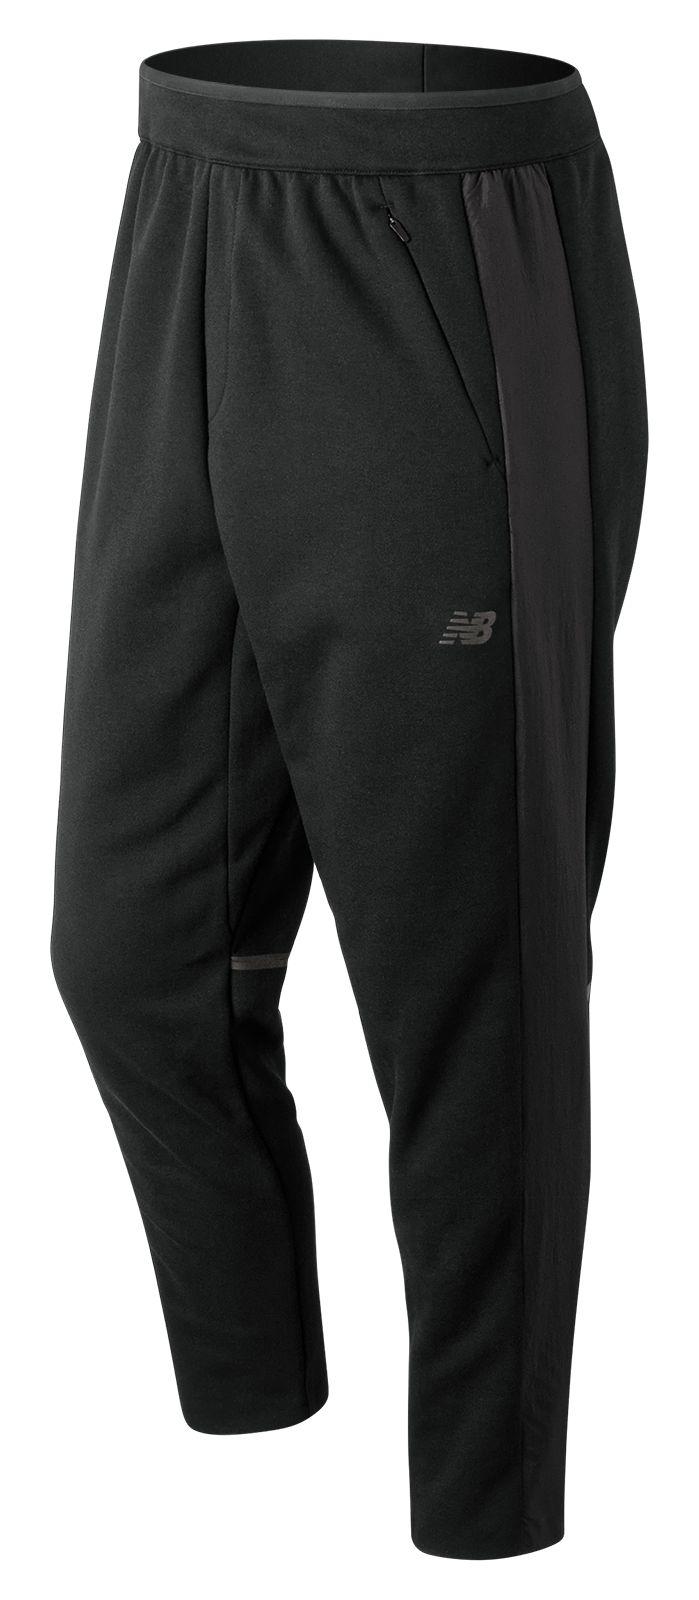 New Balance Men's Sport Style Select Knit Pant Black | eBay